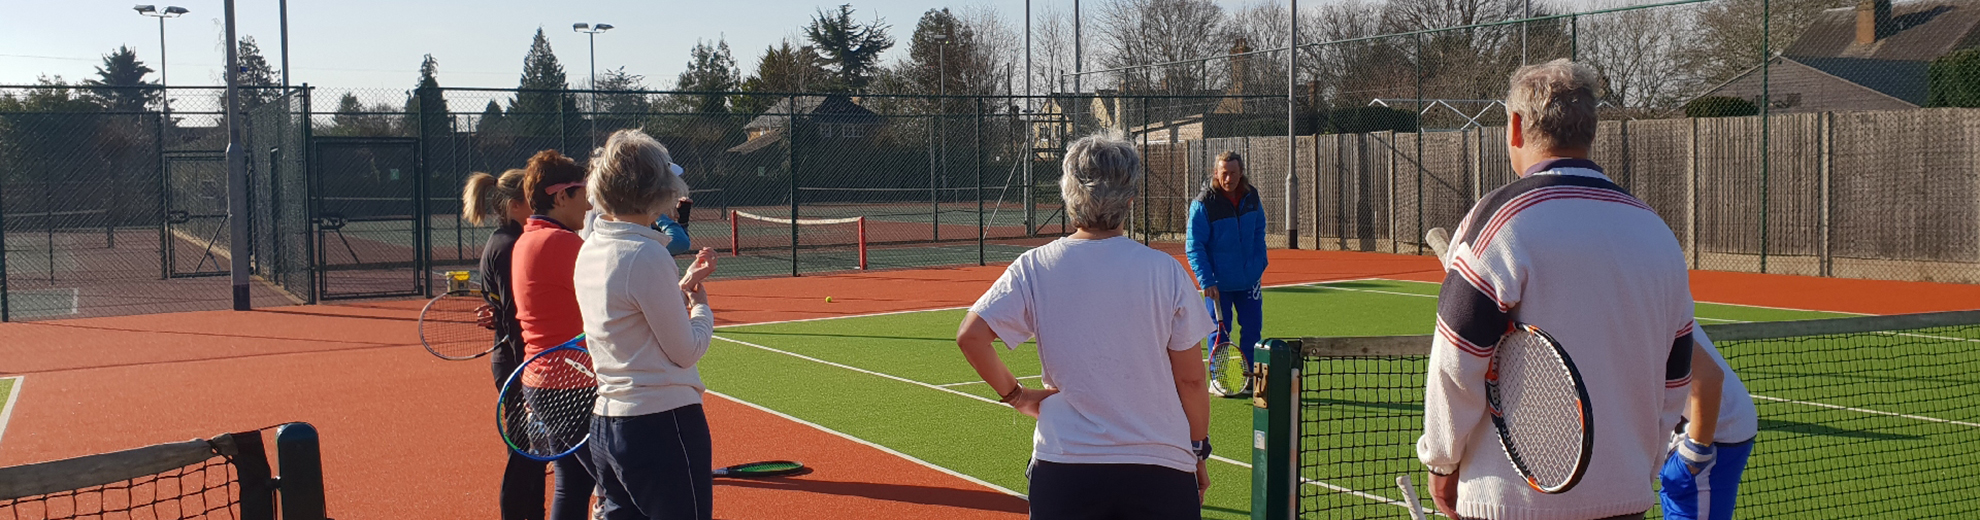 Our Coaches - Croxley Tennis Club